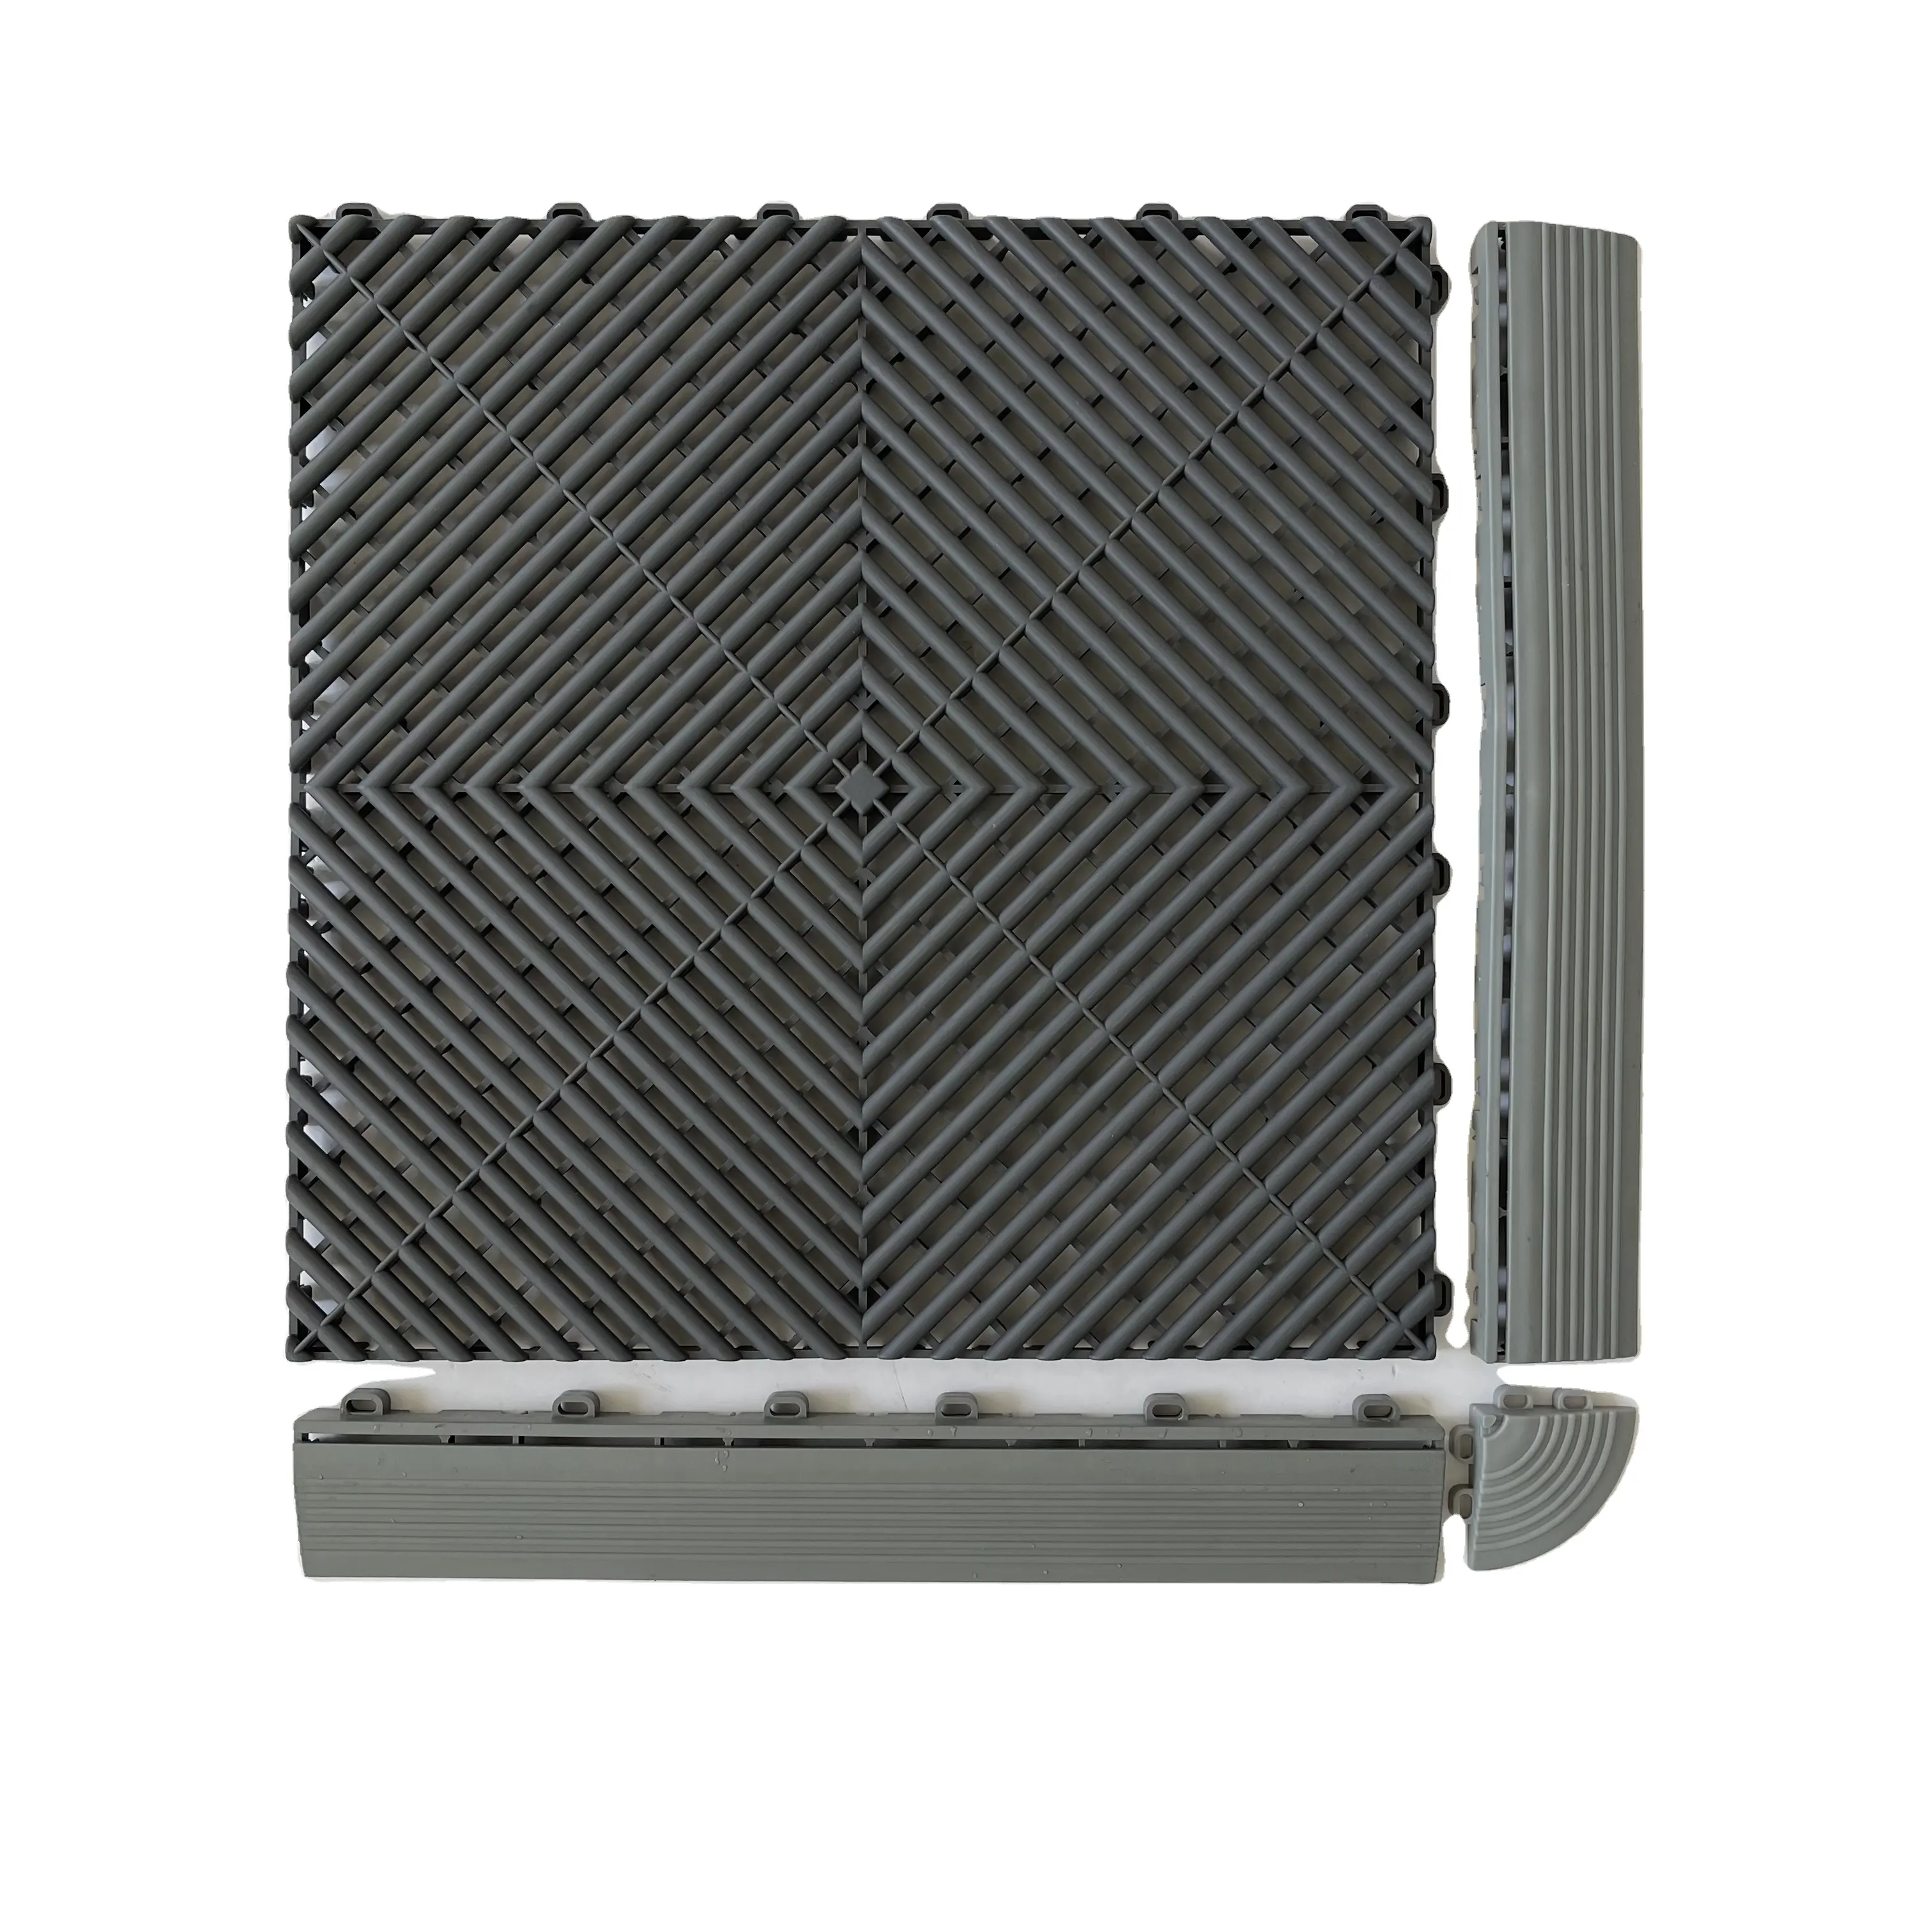 Autolavaggio mosaico di plastica griglia bordo 4s negozio tappetino griglia pavimento Multi-funzione può essere cucita autolavaggio negozio griglia del pavimento